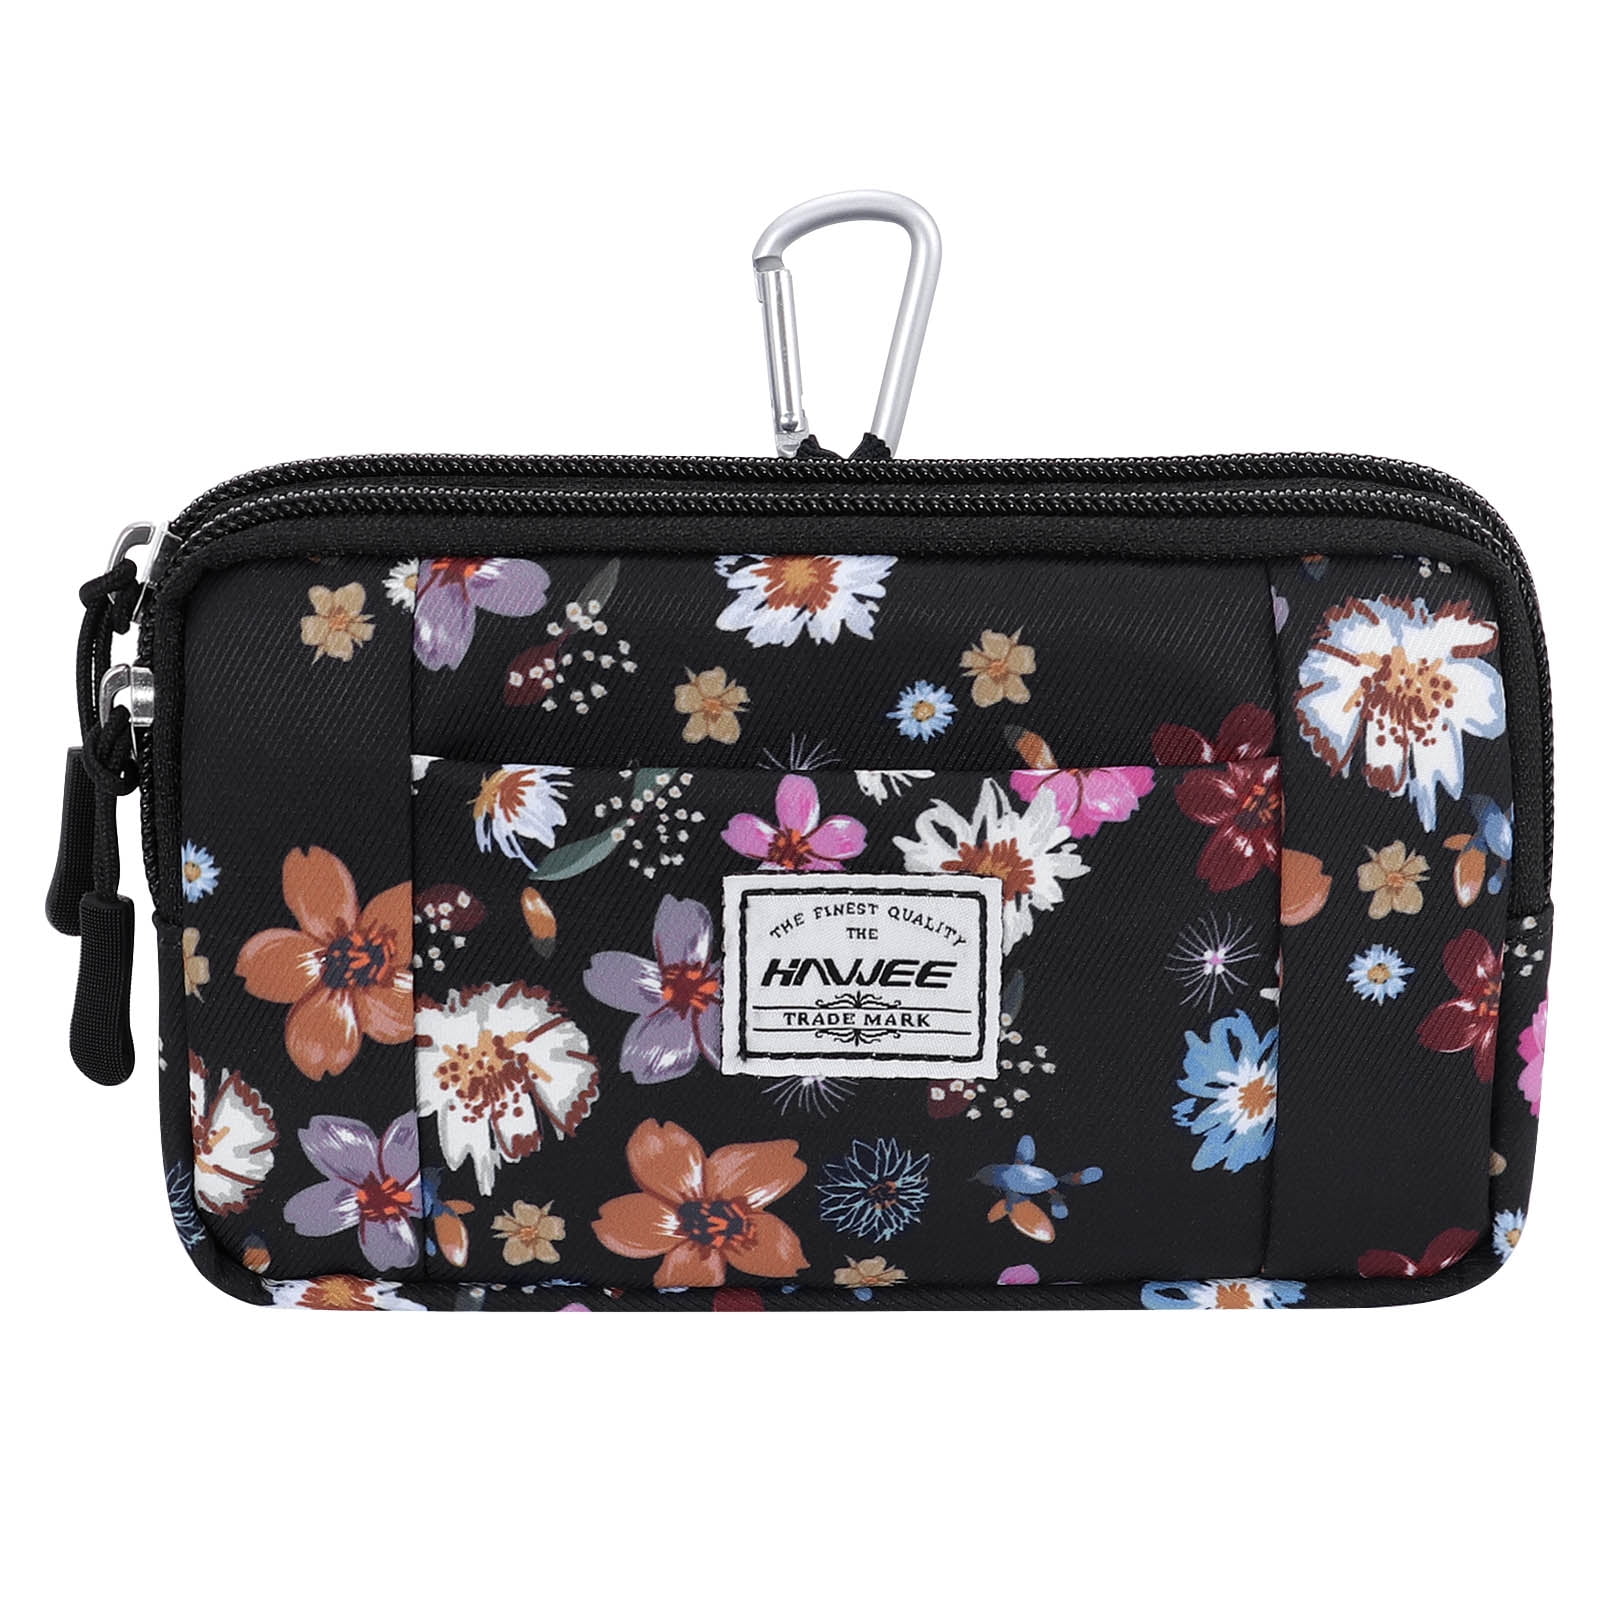 HAWEE Waist Fanny Packs for Women Small Outdoor Adventurer Belt Bag ...